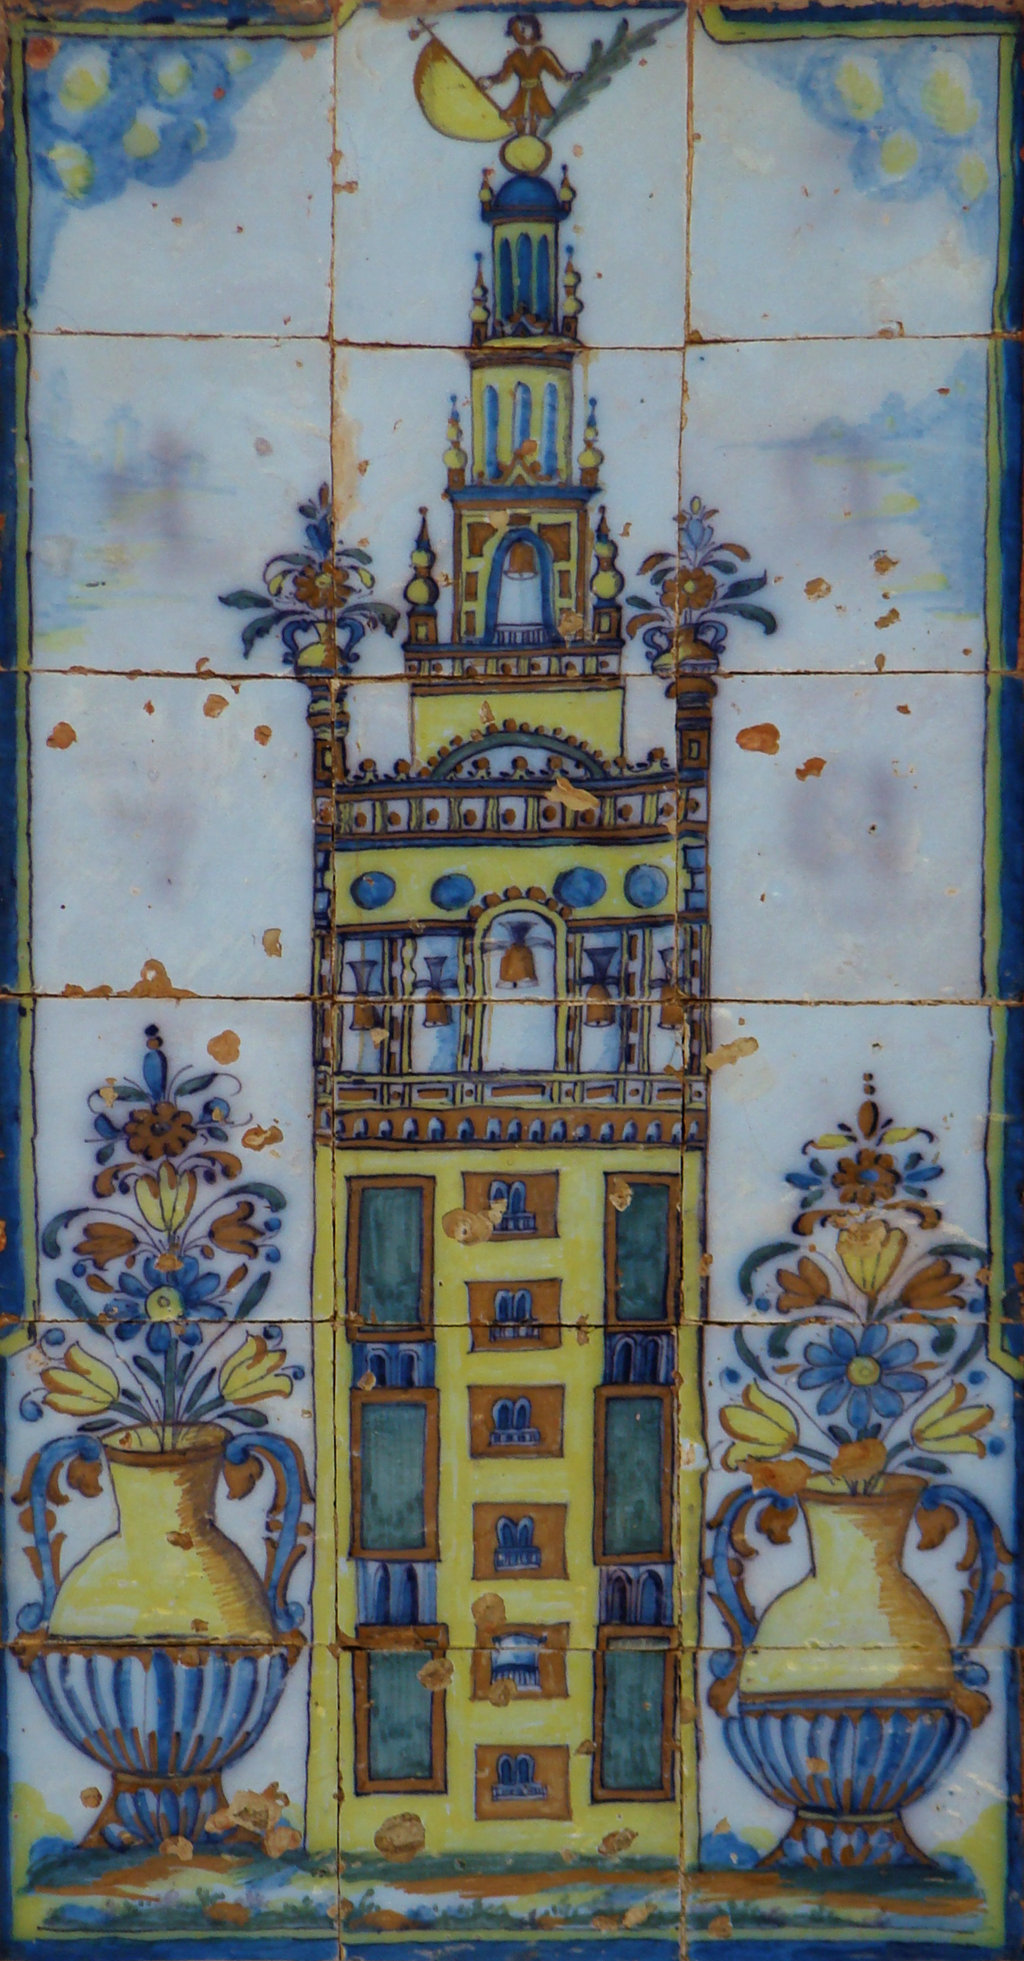 02600. Panel de azulejos. Heráldica del Cabildo Catedral de Sevilla. Casa de la Cilla. Sanlúcar la Mayor. Sevilla.